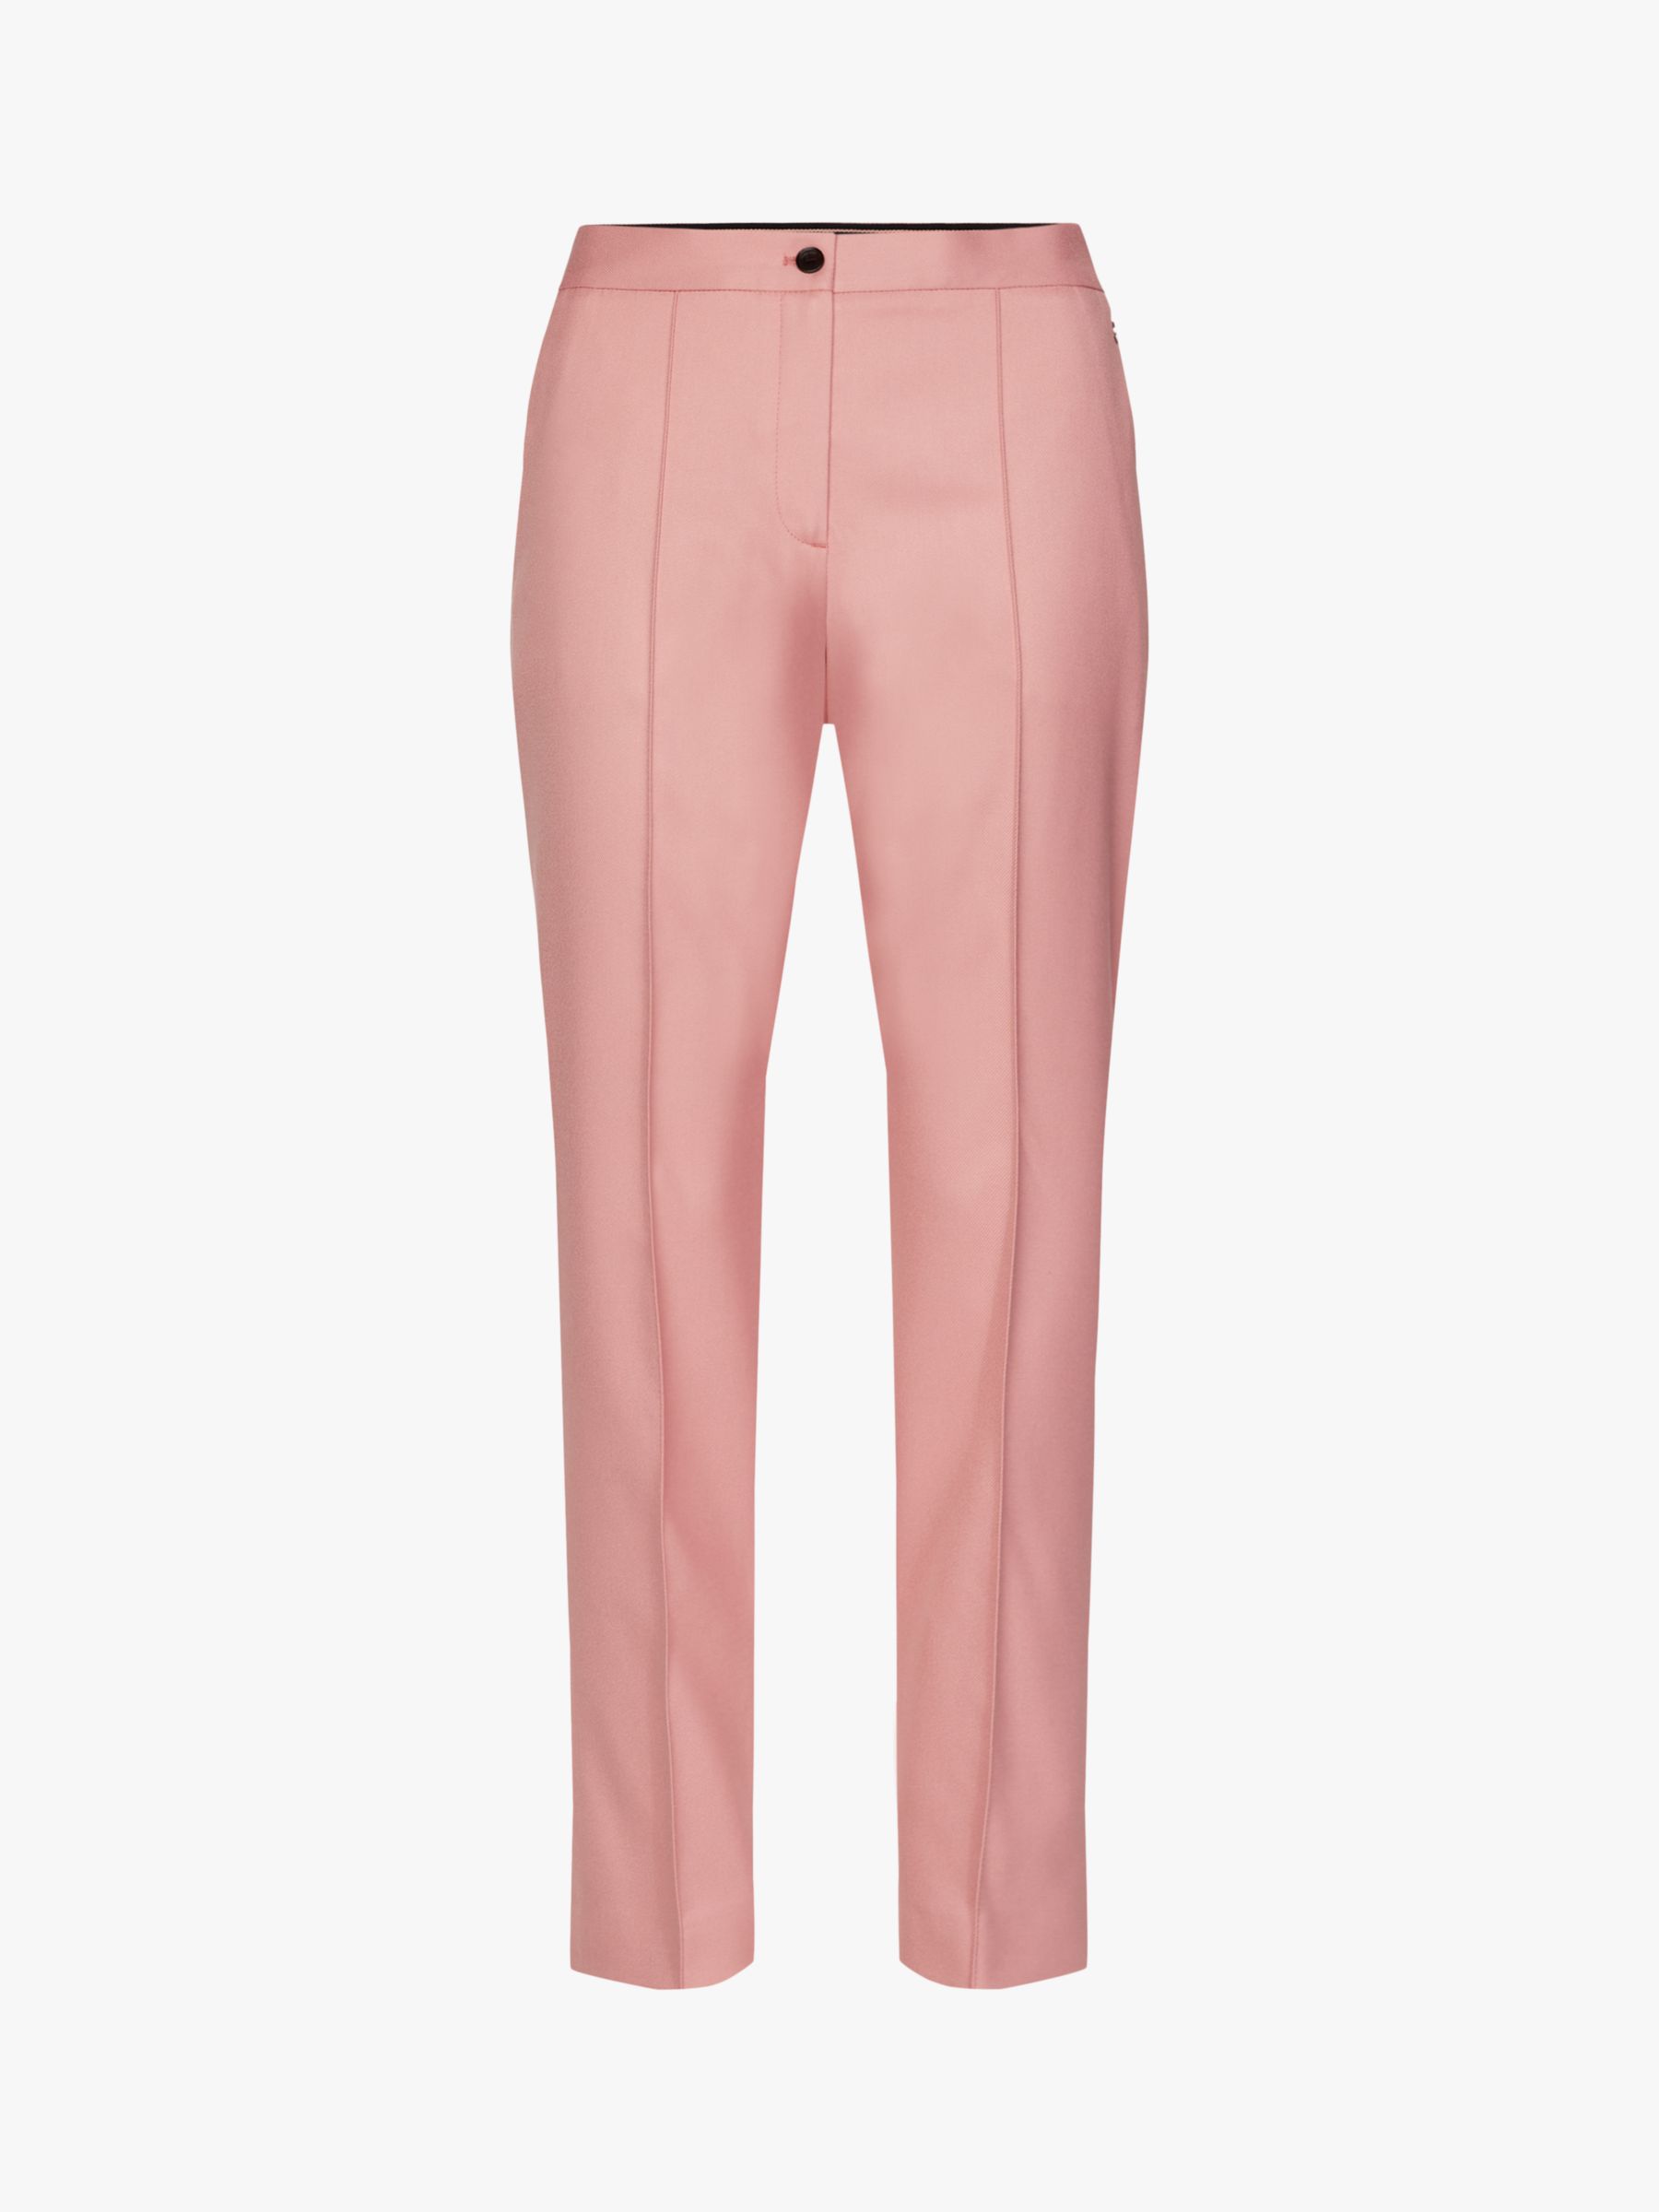 calvin klein pink pants